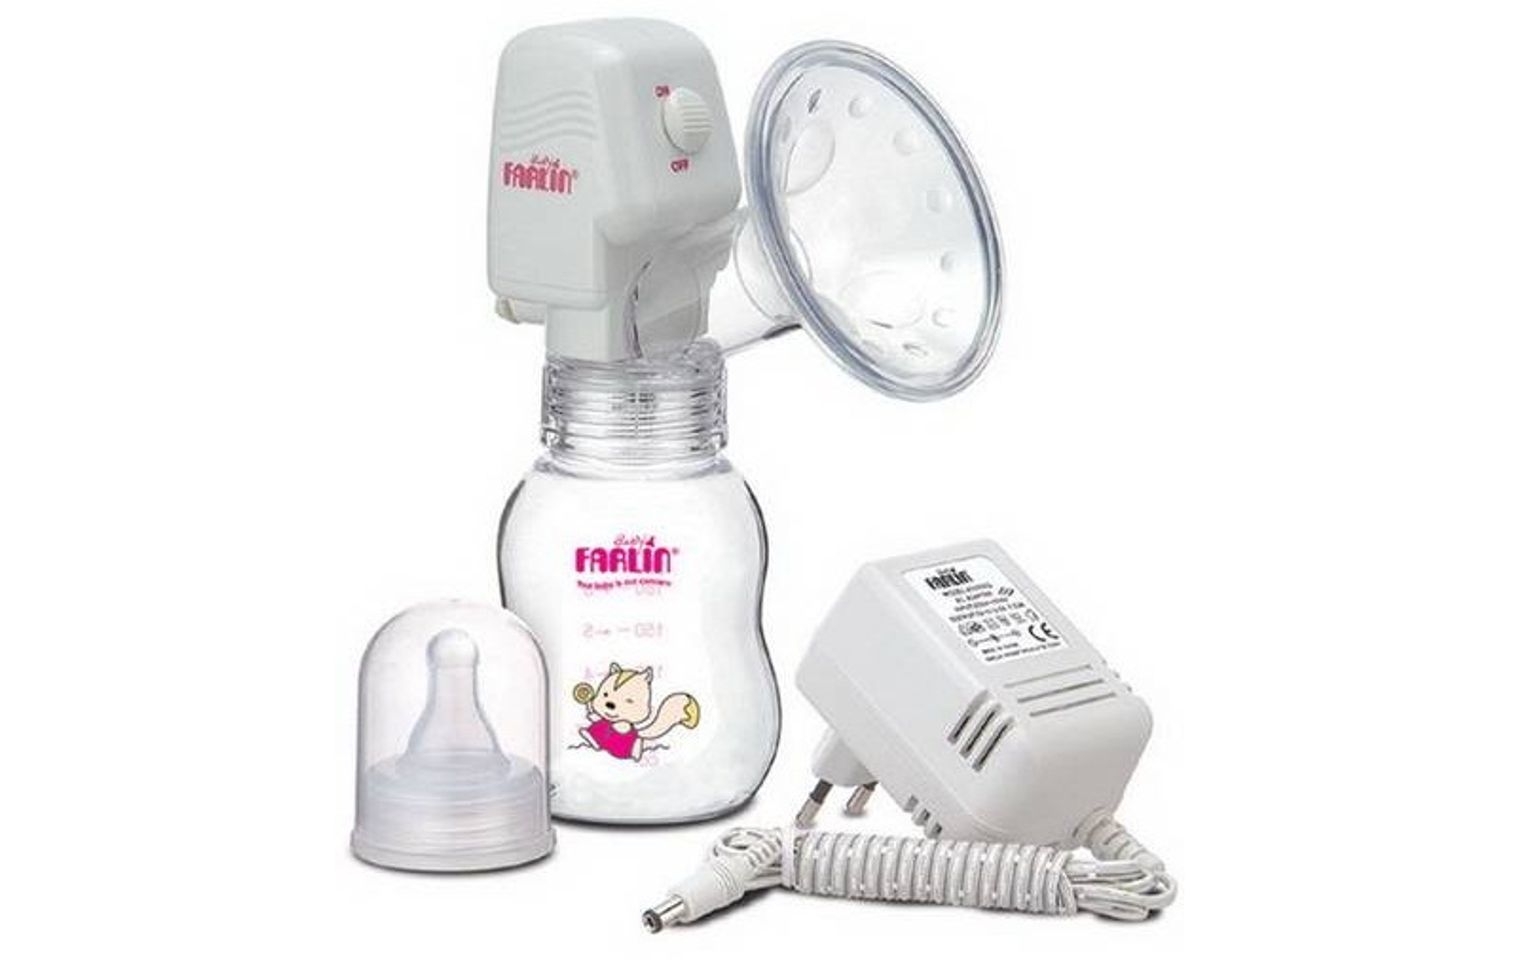 Máy hút sữa Farlin BF 639 sử dụng pin an toàn giúp các mẹ hút sữa nhẹ nhàng như trẻ đang bú mẹ